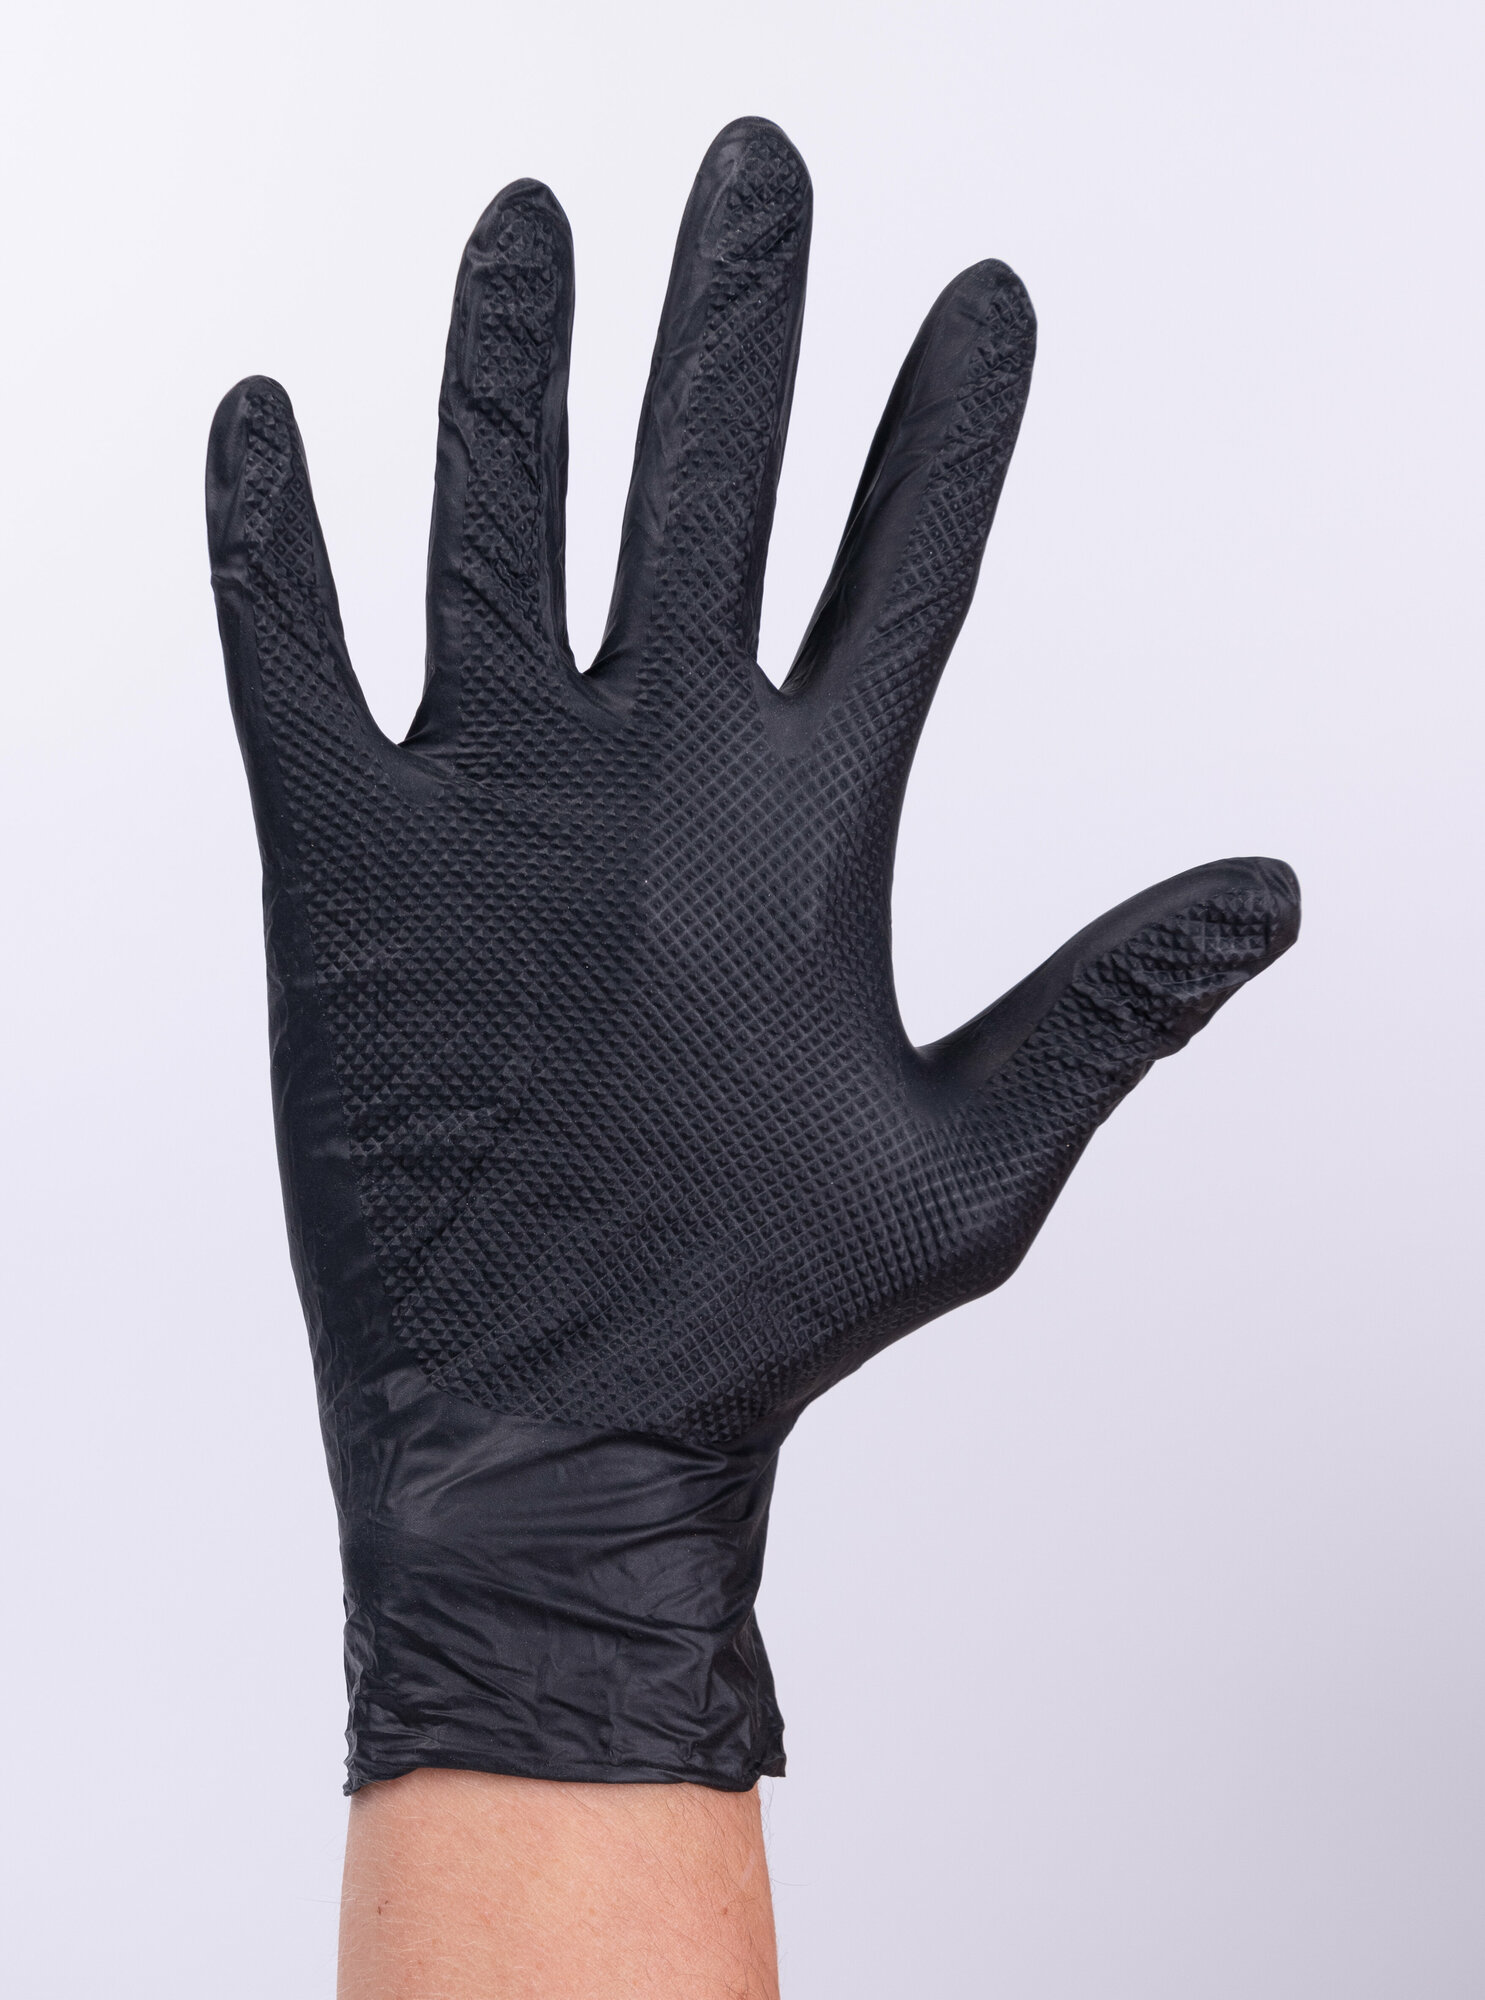 Сверхпрочные перчатки нитриловые защитные нескользящие. 100 штук- 50 пар.